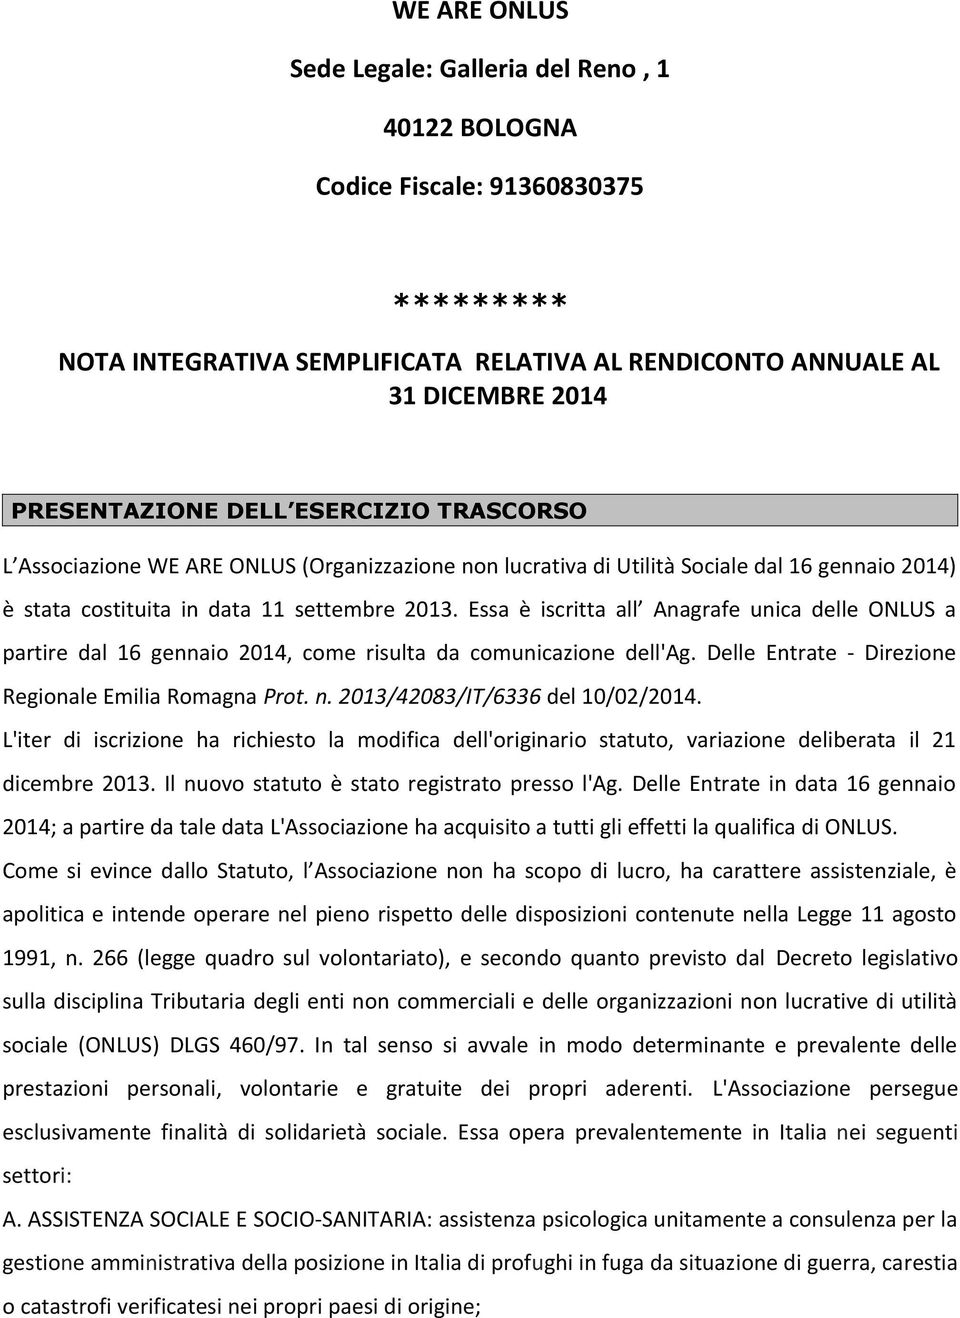 Essa è iscritta all Anagrafe unica delle ONLUS a partire dal 16 gennaio 2014, come risulta da comunicazione dell'ag. Delle Entrate - Direzione Regionale Emilia Romagna Prot. n.